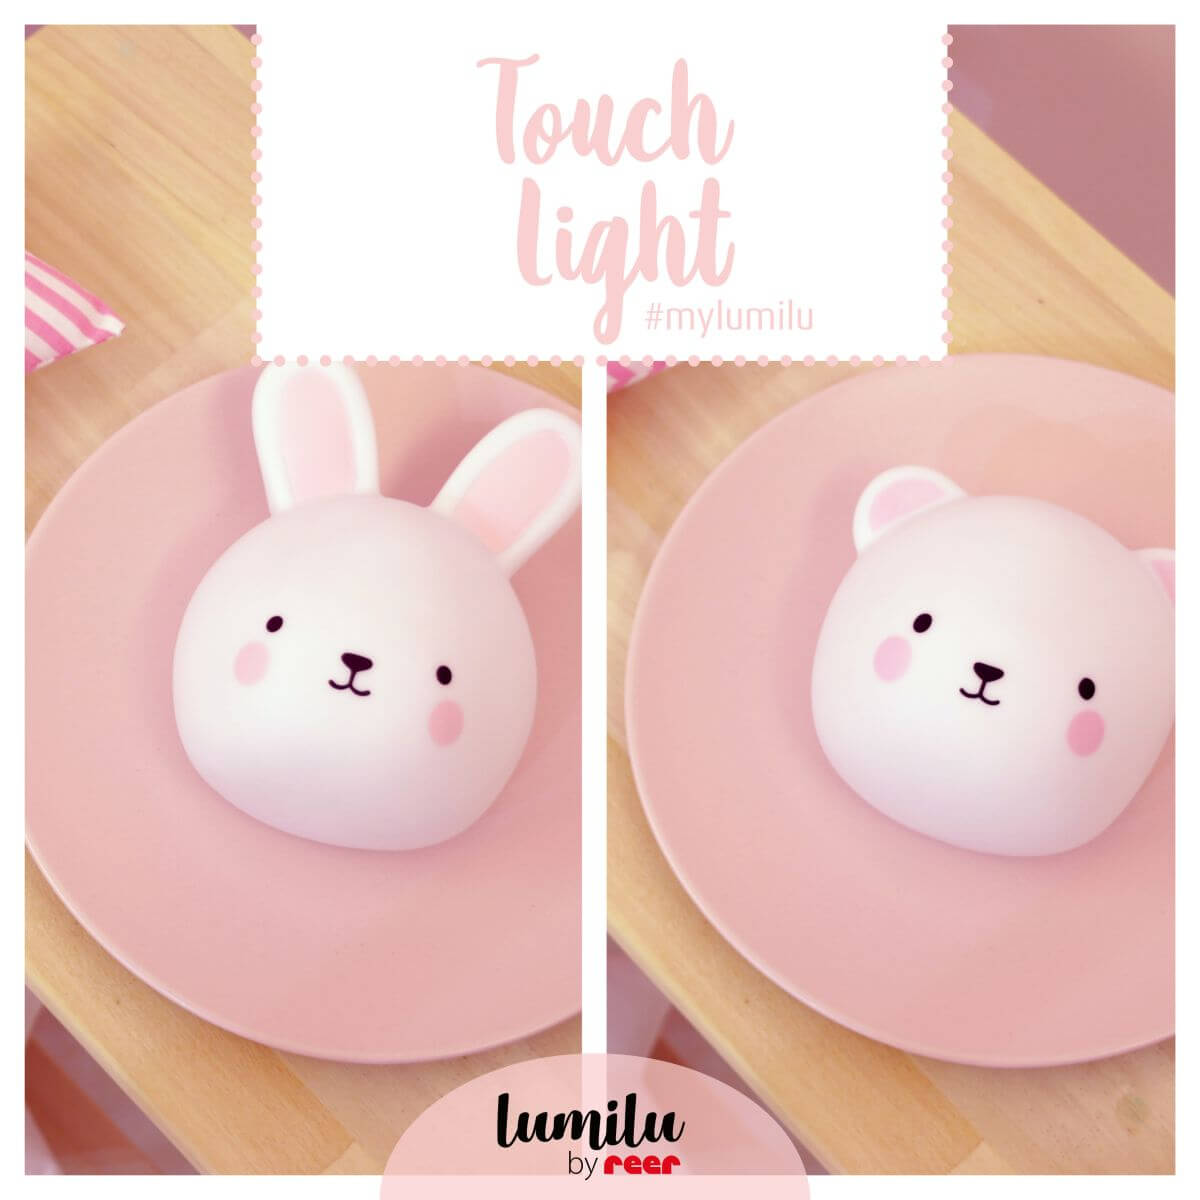 Bear - Touch Light lumilu Nachtlicht